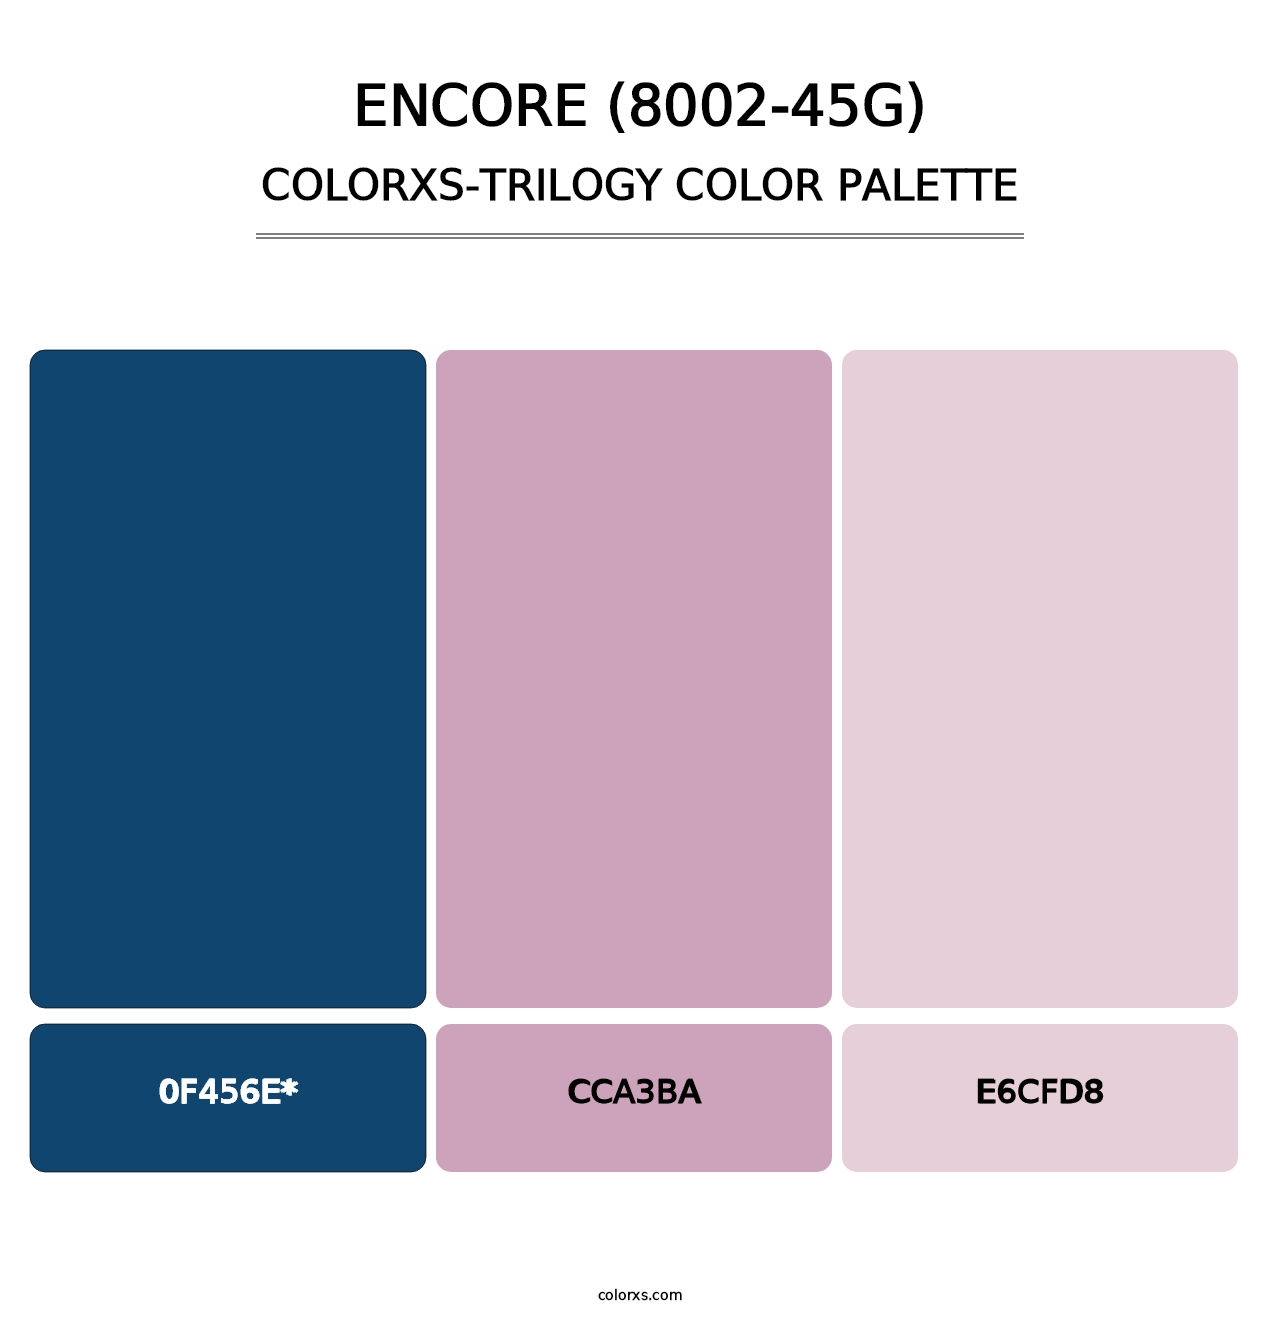 Encore (8002-45G) - Colorxs Trilogy Palette